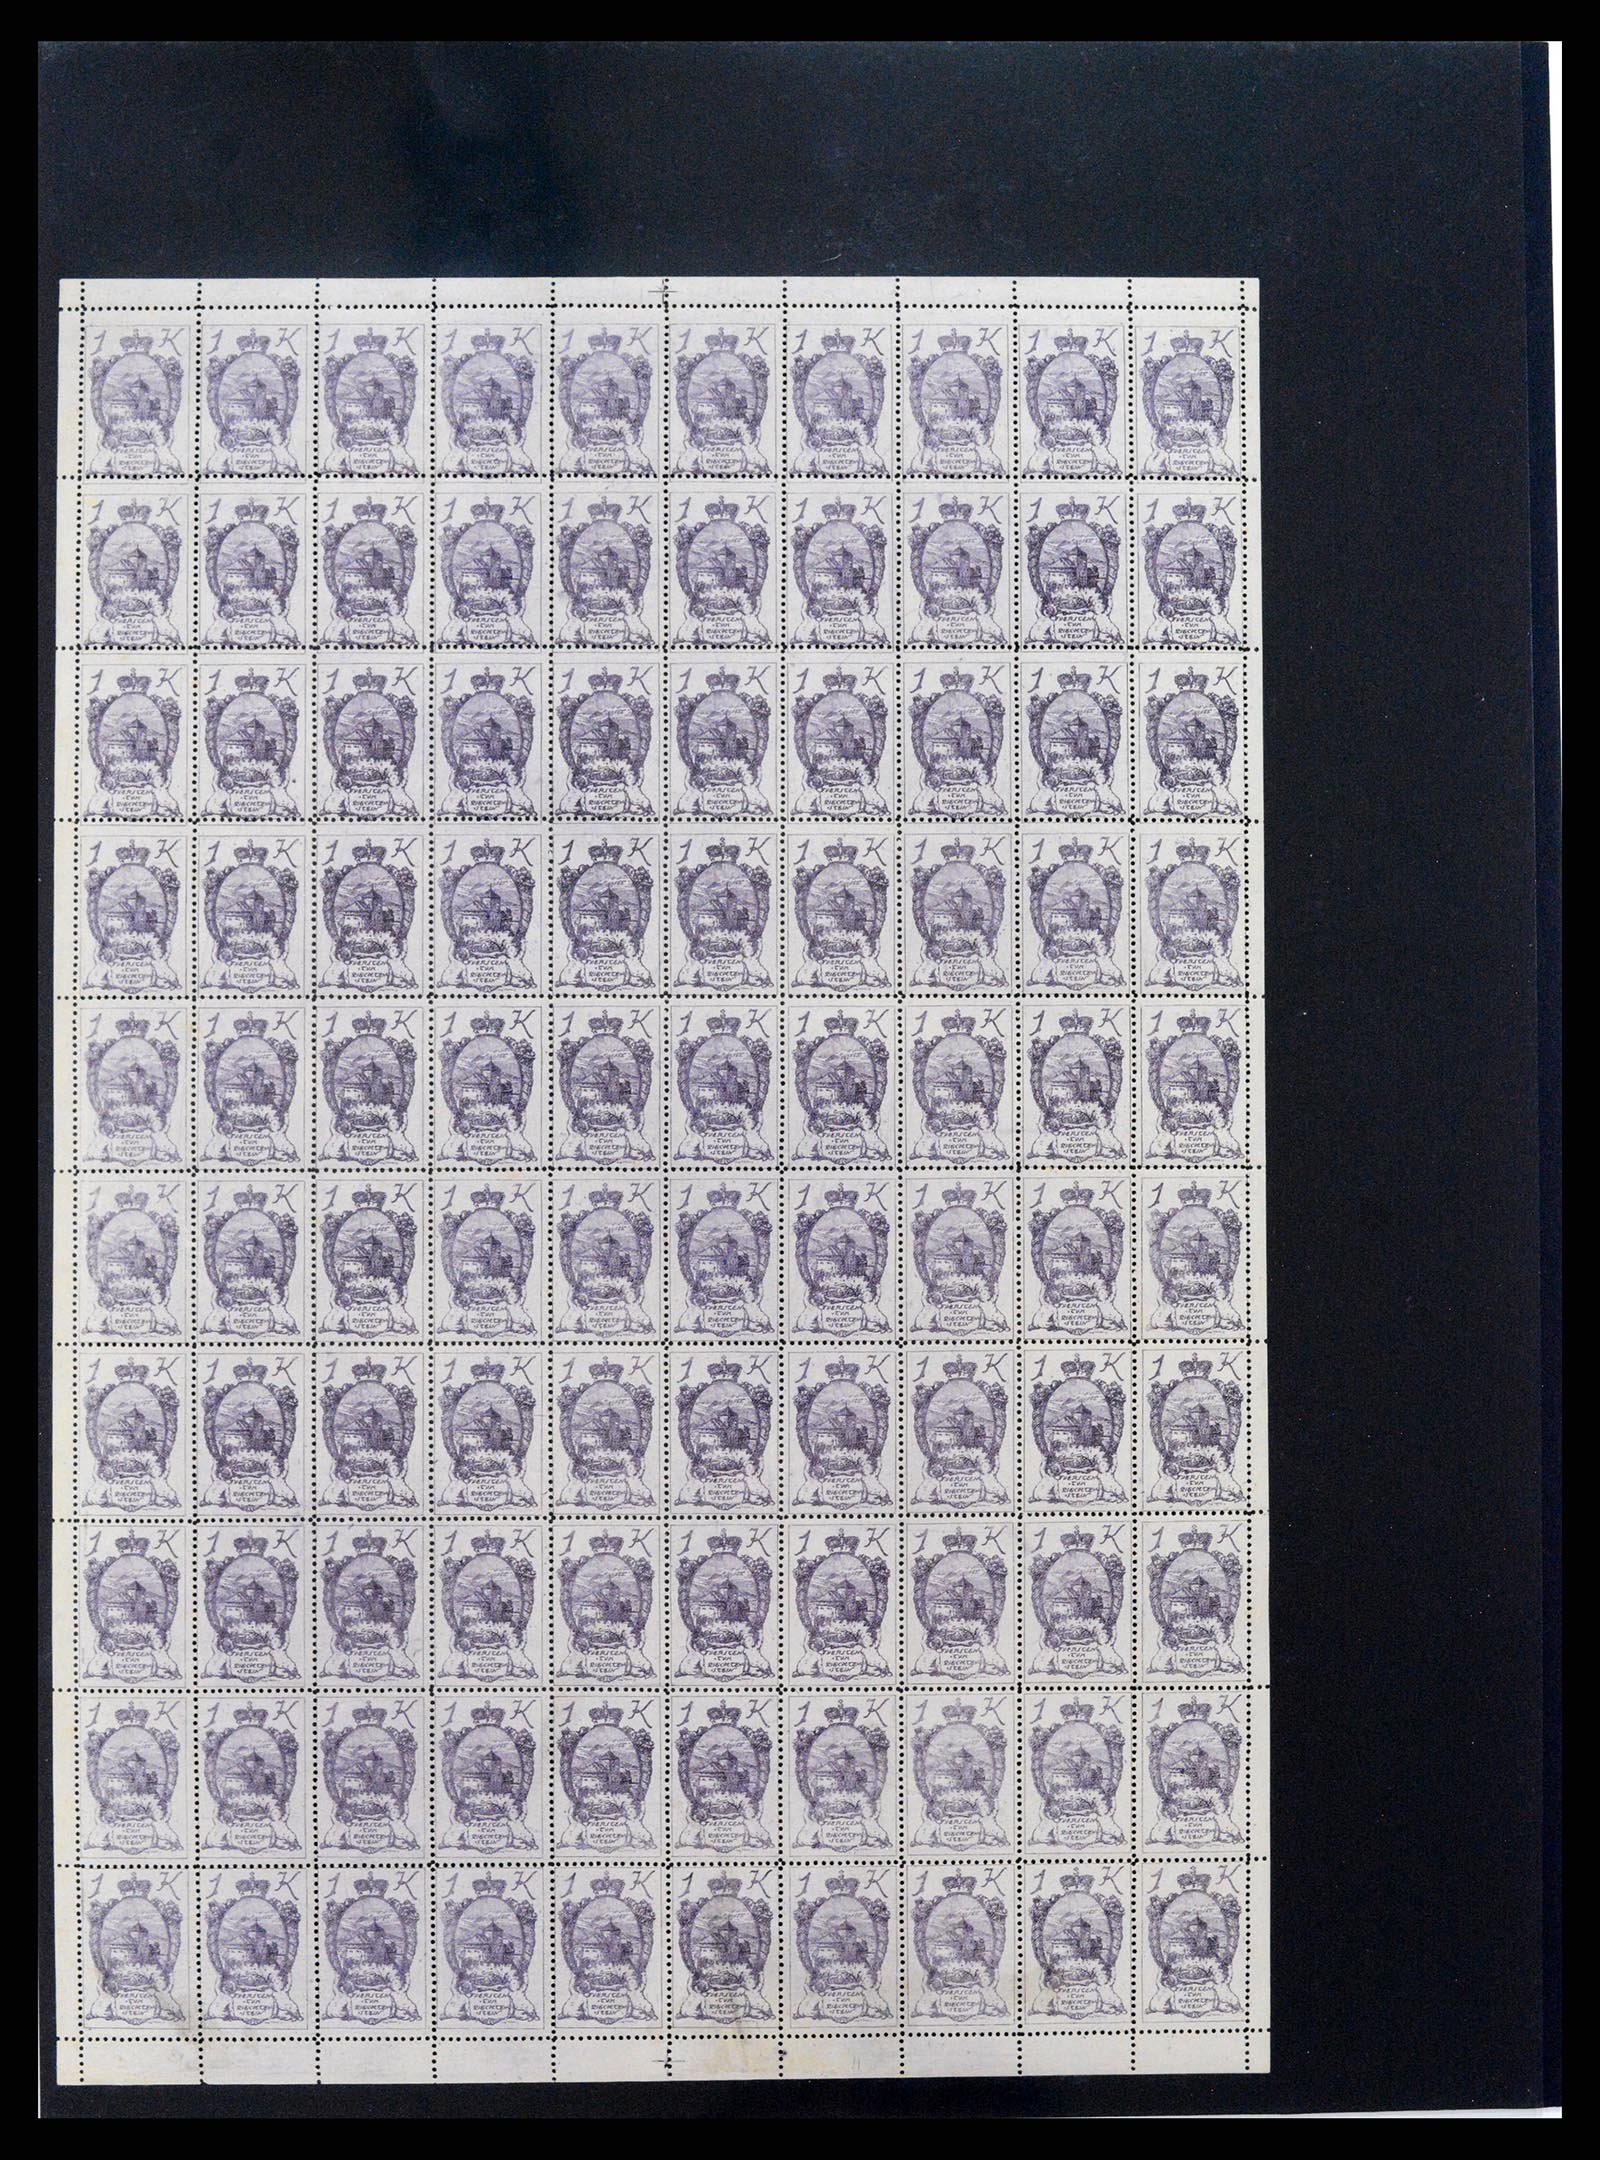 37150 1661 - Stamp collection 37150 Liechtenstein supercollection 1912-1962.